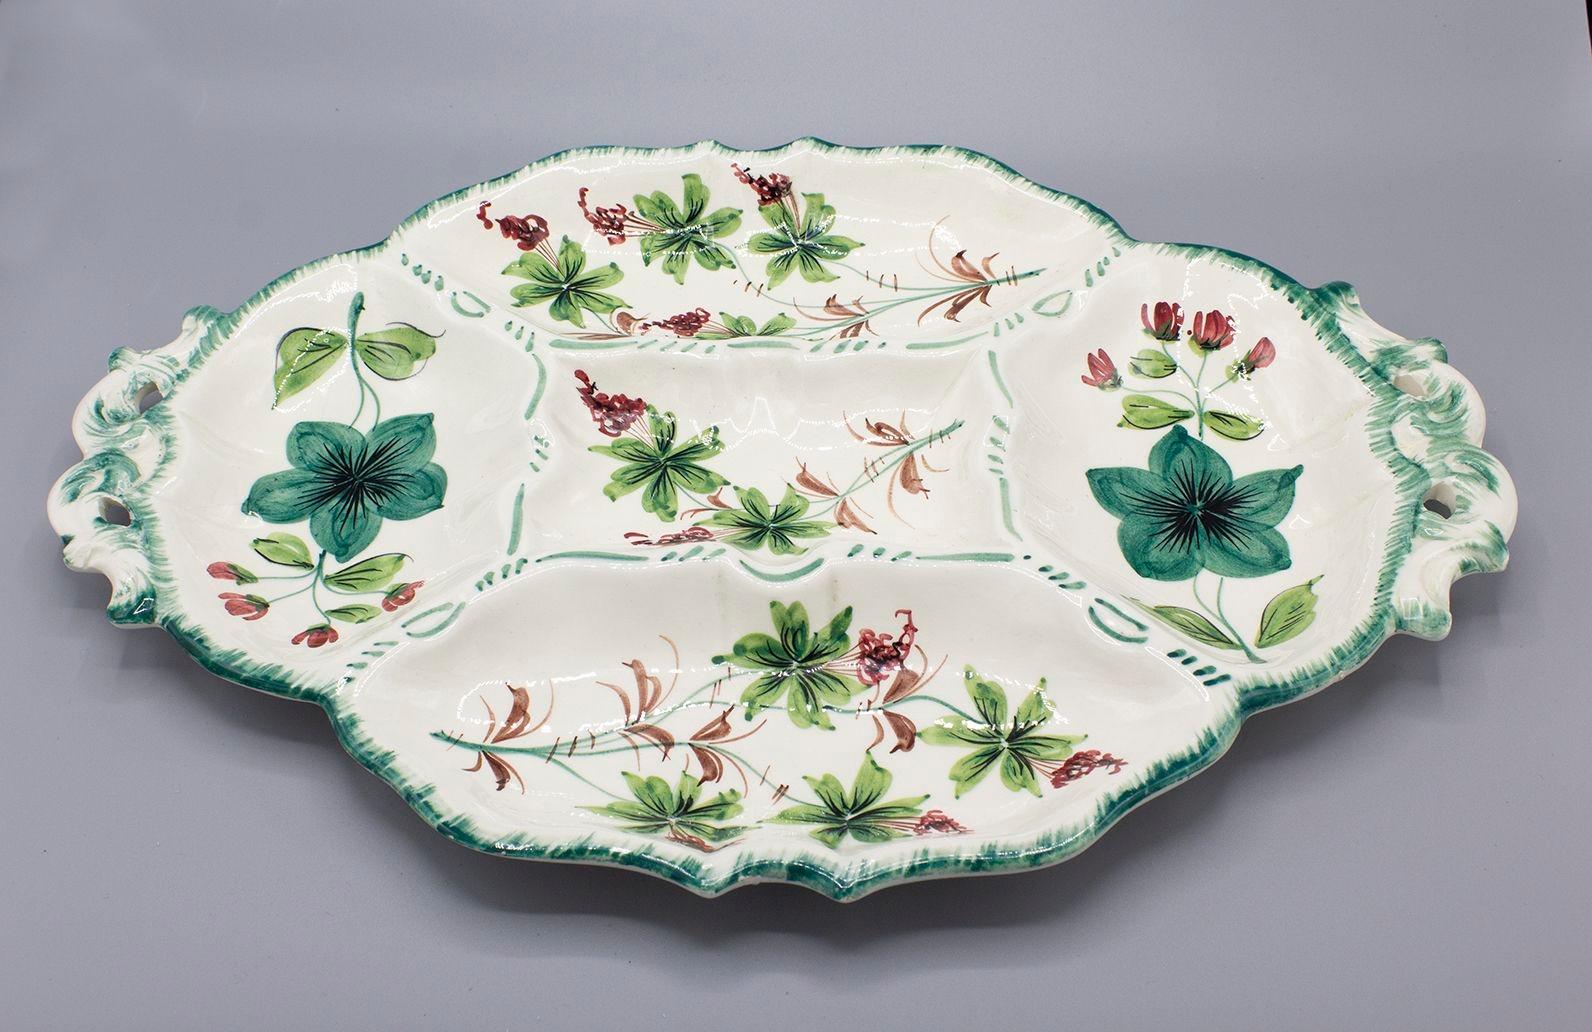 Italien, 1960er Jahre
Handbemalte italienische Servierplatte aus Keramik mit Blumenmuster. Sie hat fünf unterteilte Servierbereiche und ist auf dem Sockel mit 